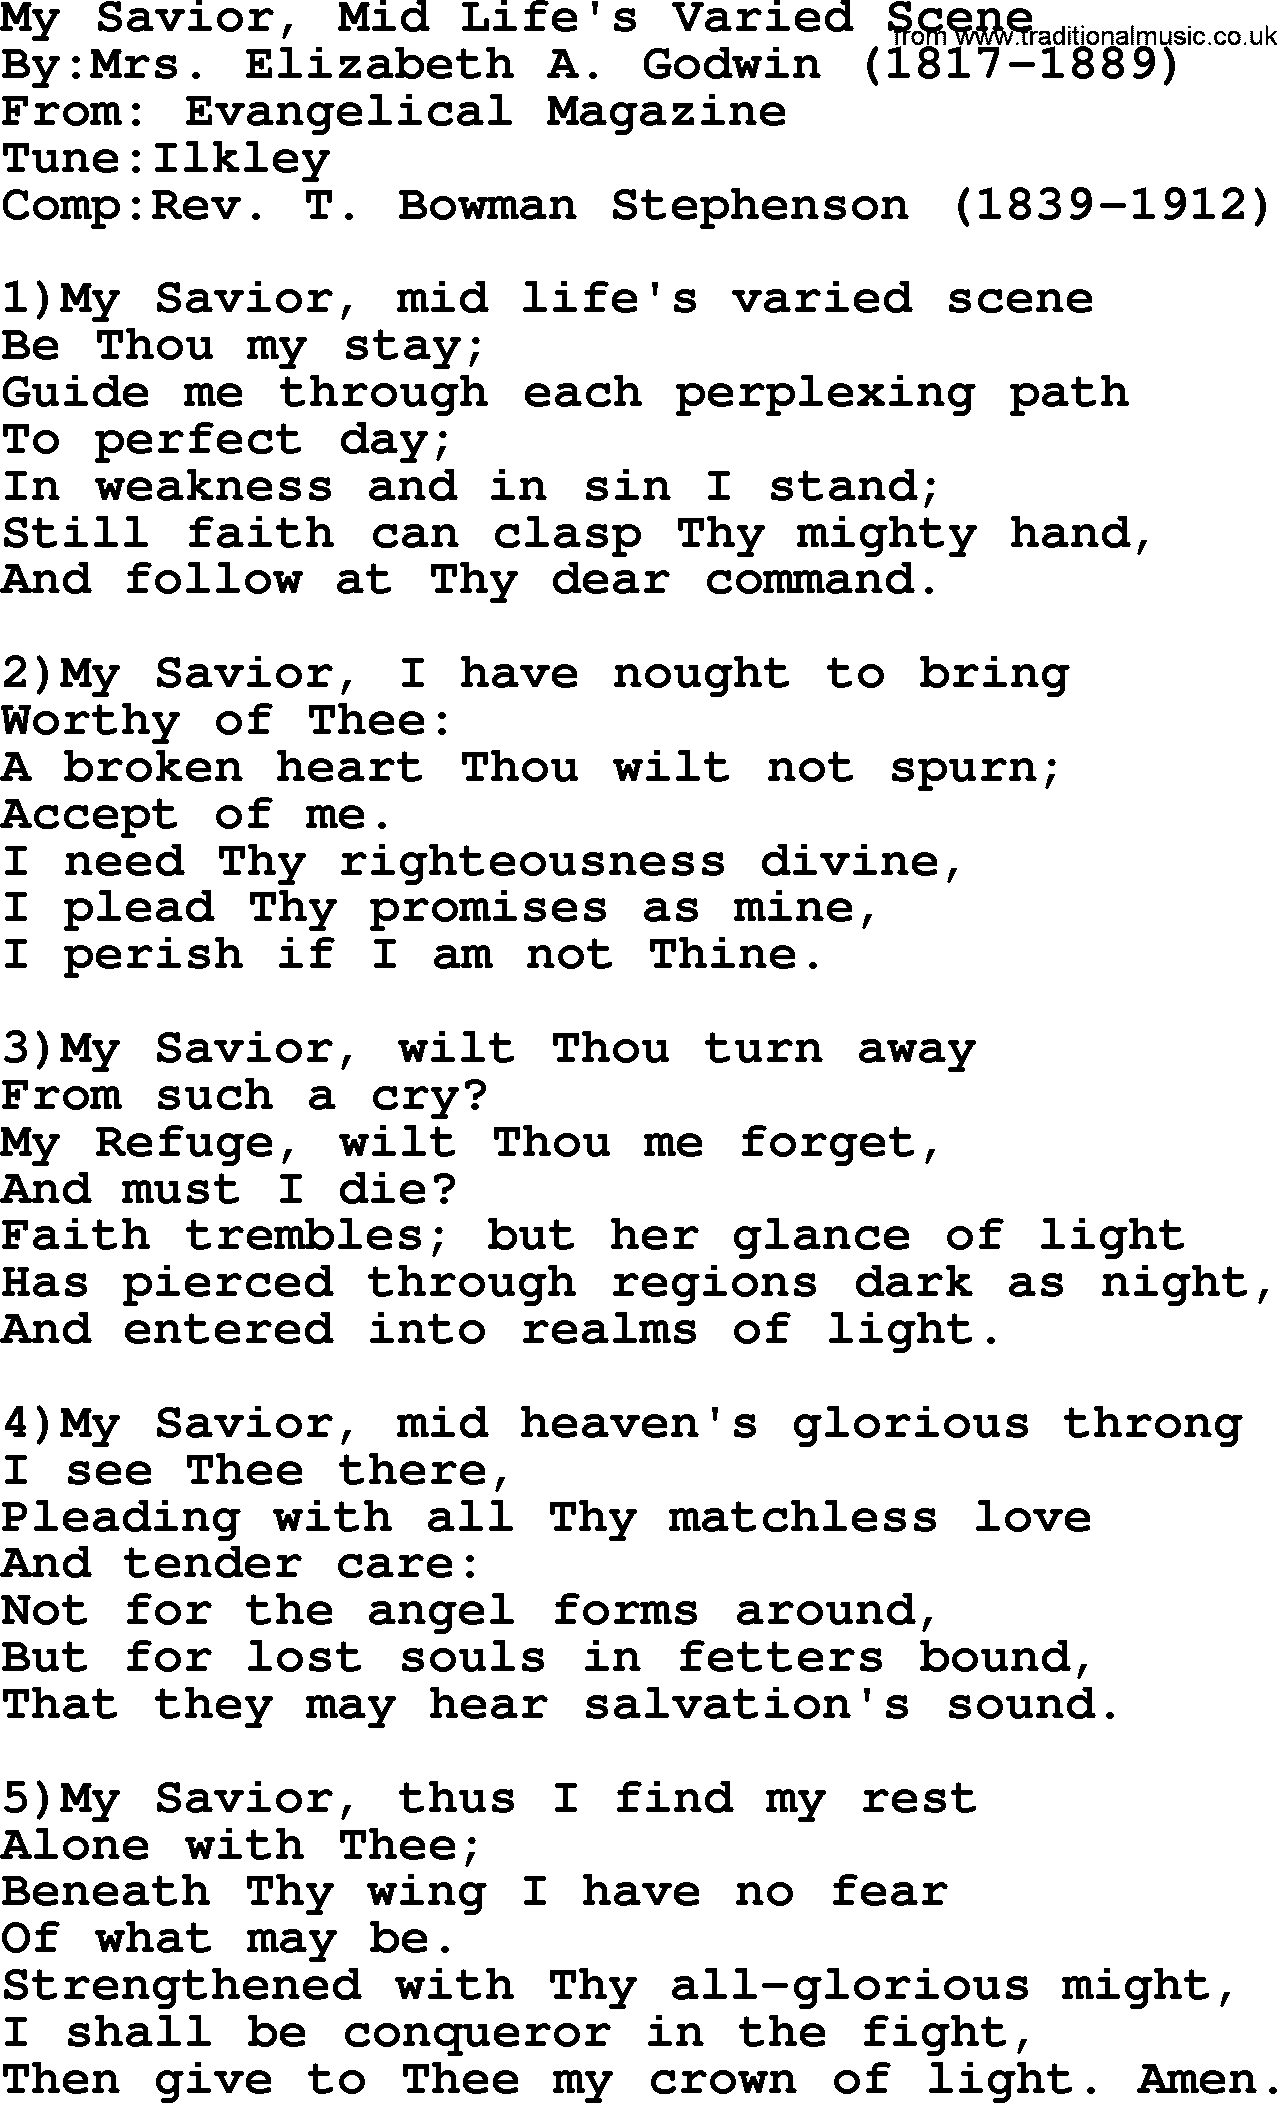 Methodist Hymn: My Savior, Mid Life's Varied Scene, lyrics